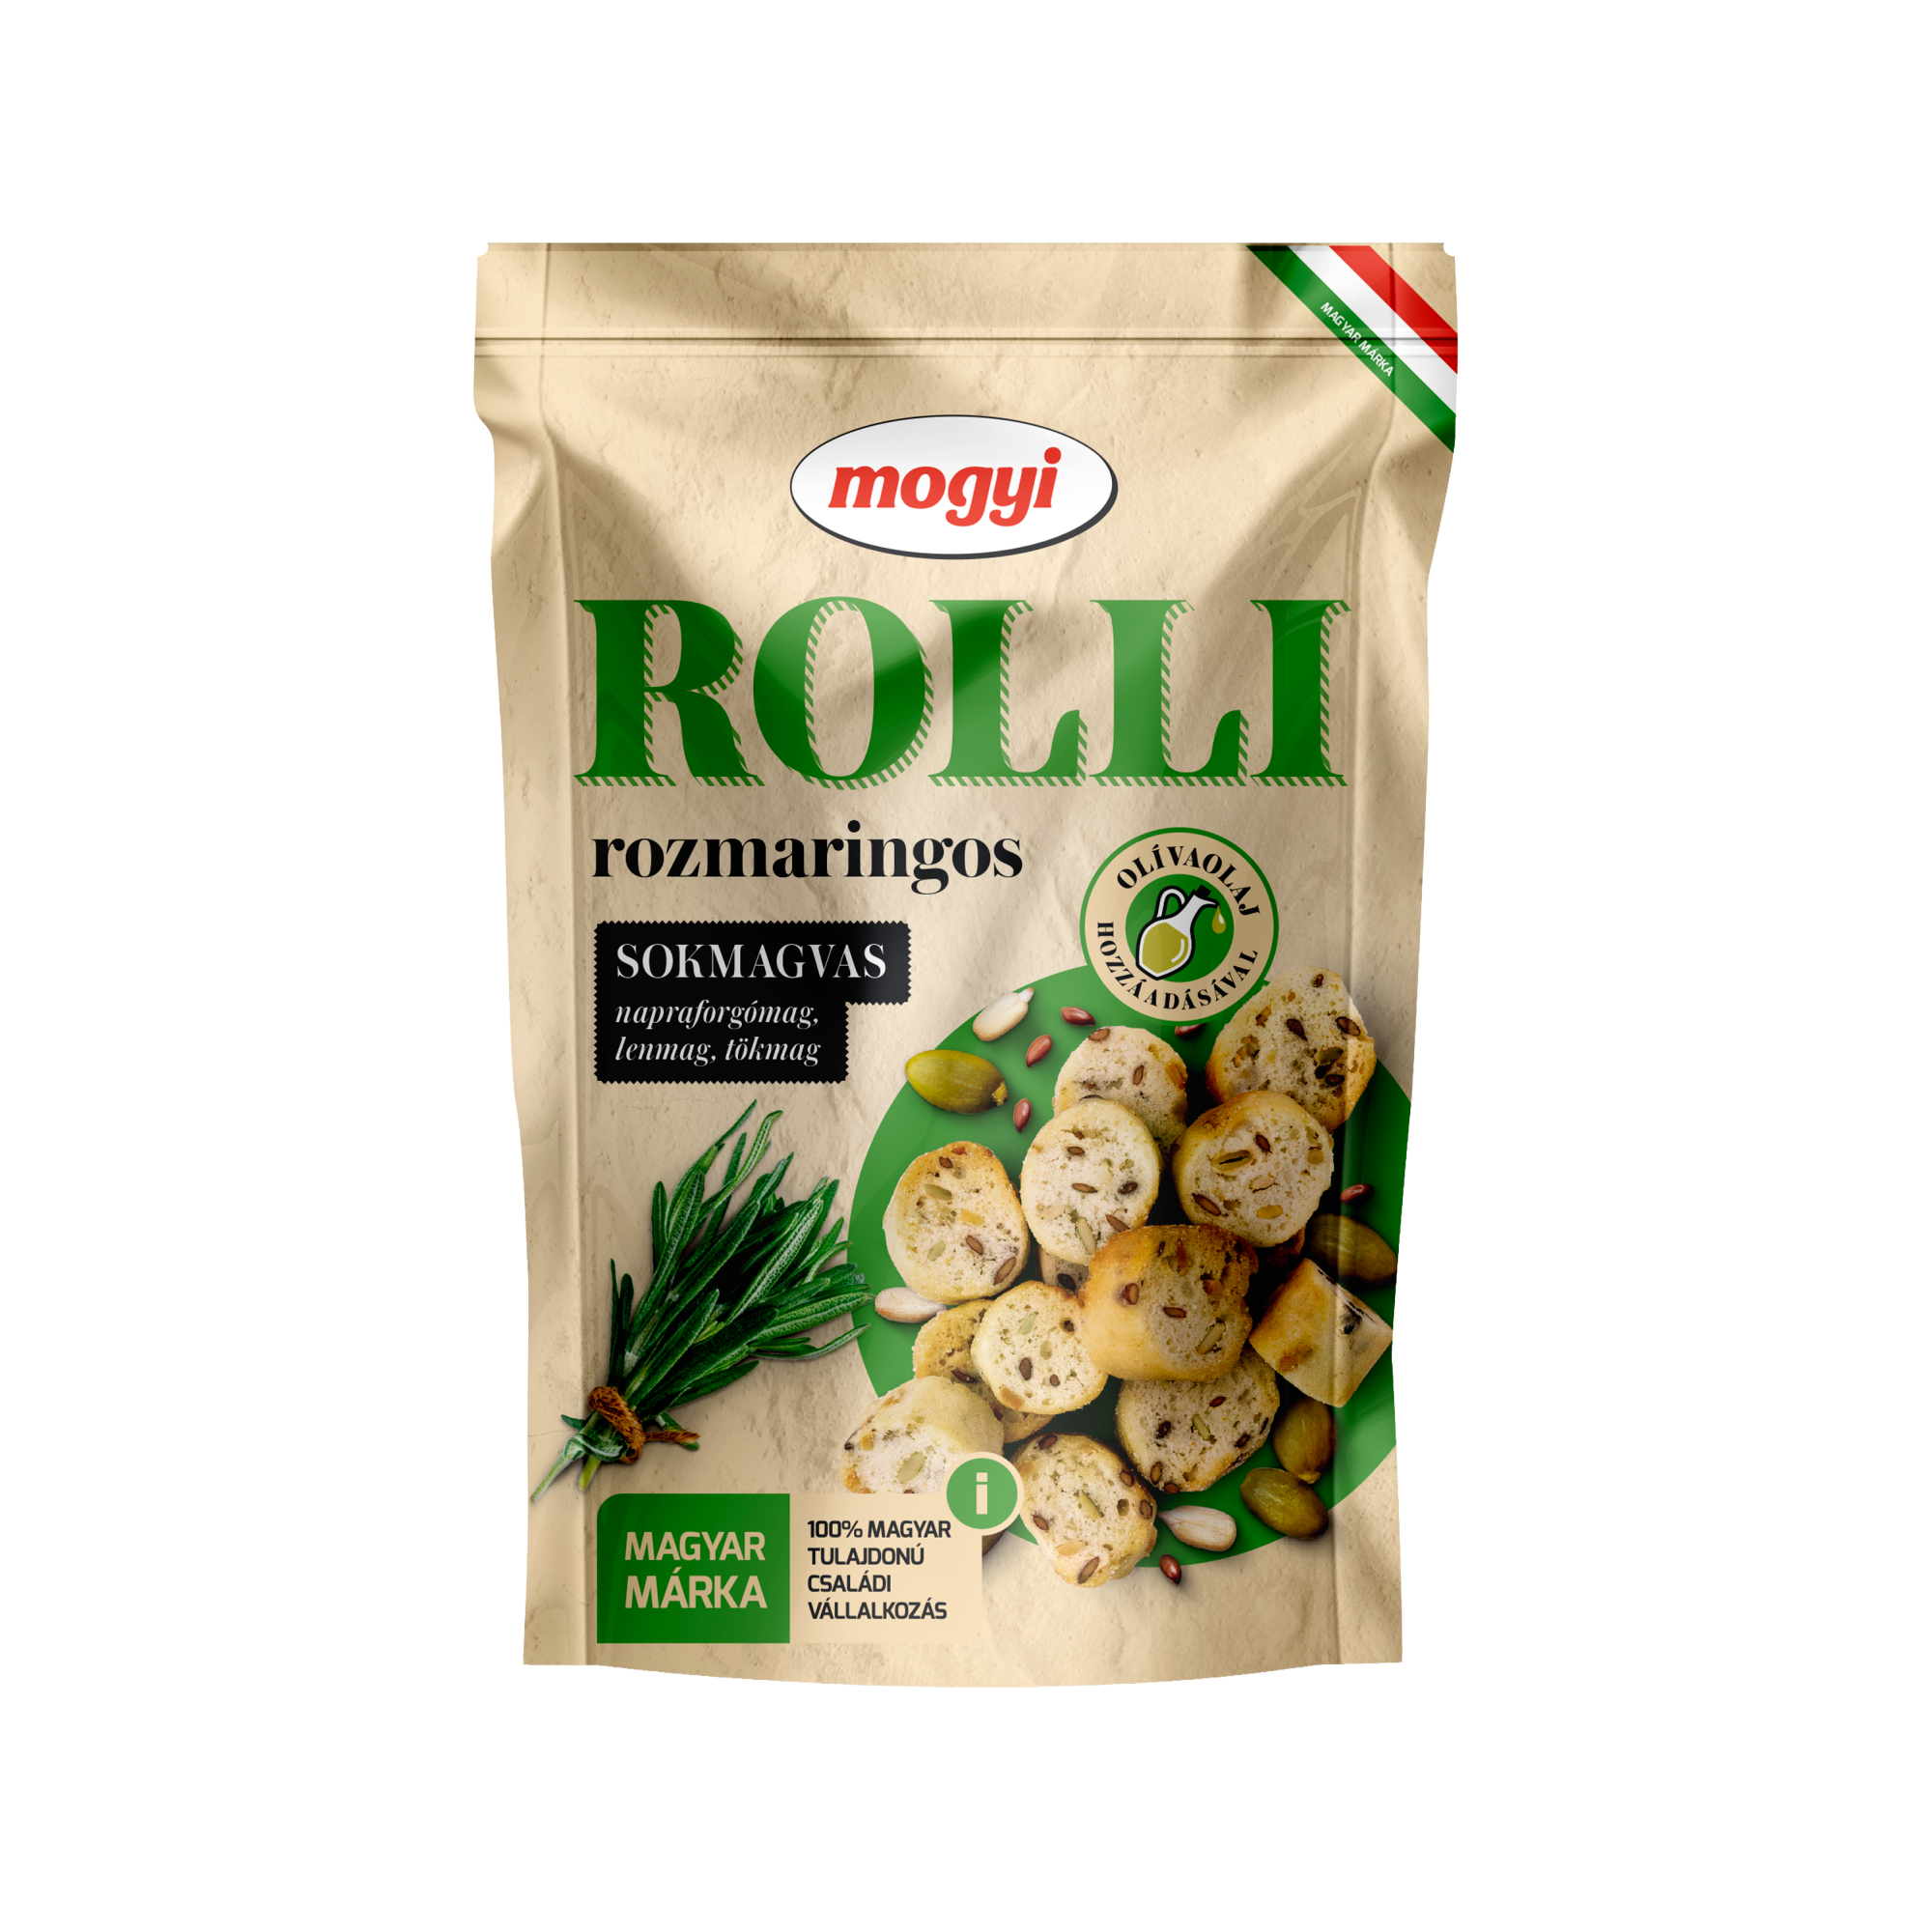 Сухарики пшеничные Mogyi Rolli с розмарином, 90 г